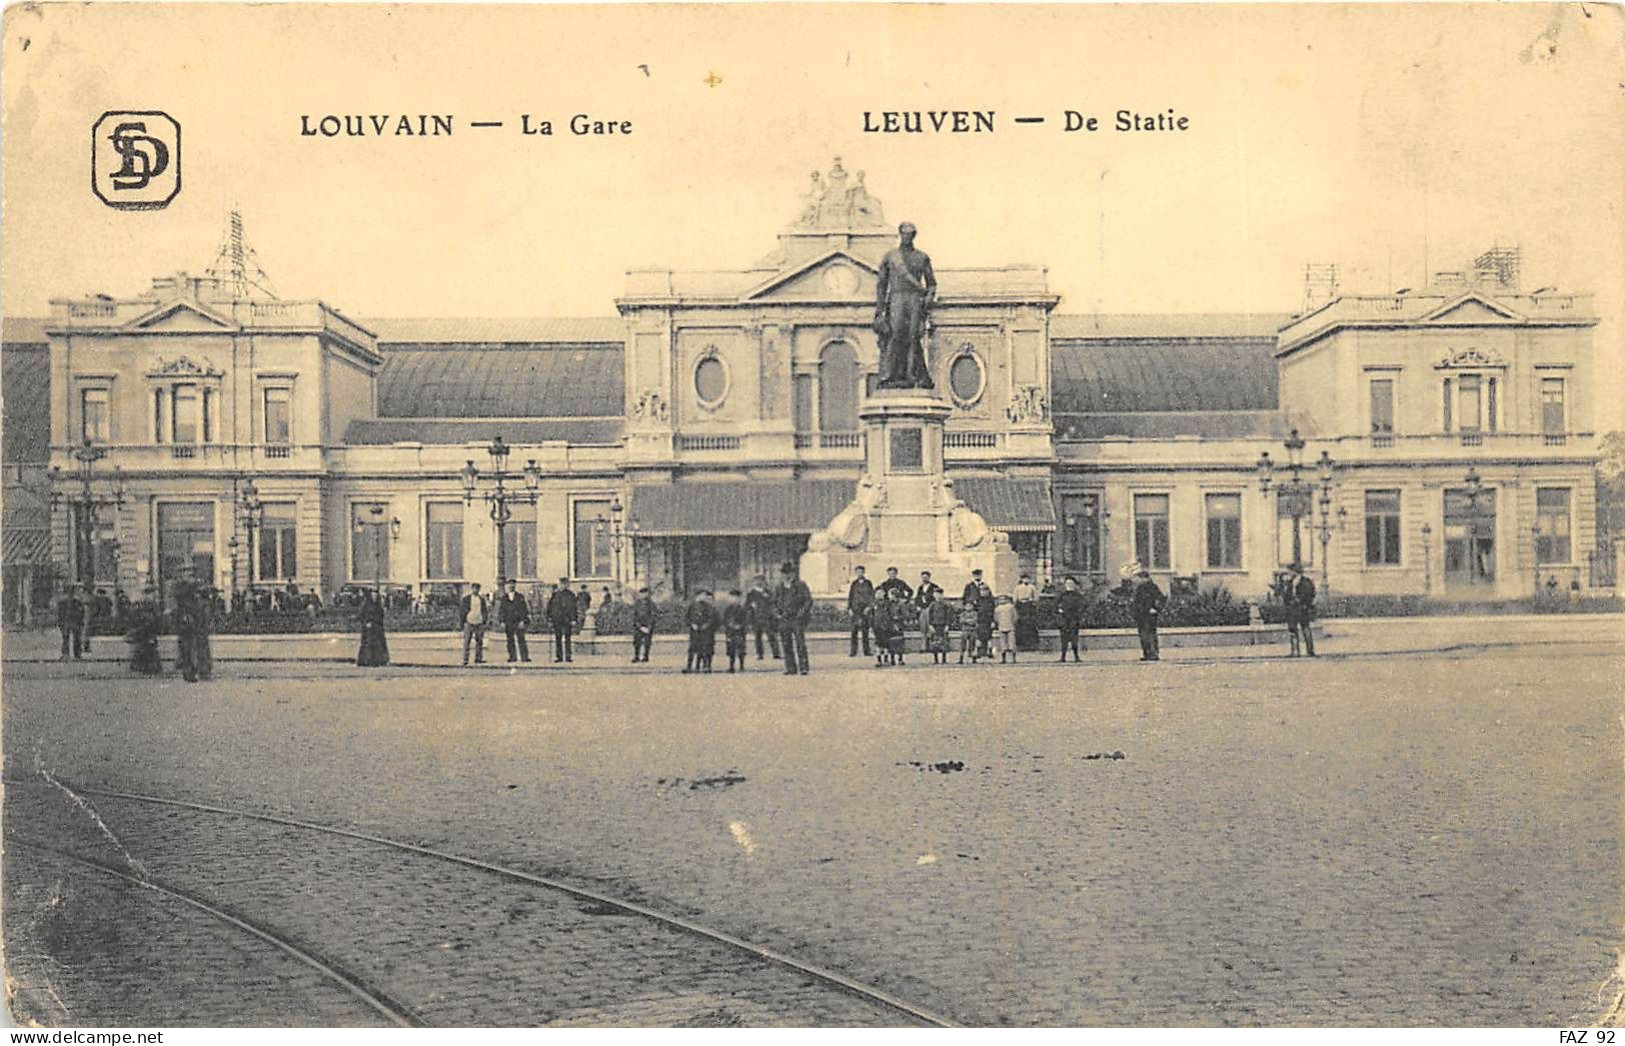 Louvain - La Gare - Leuven